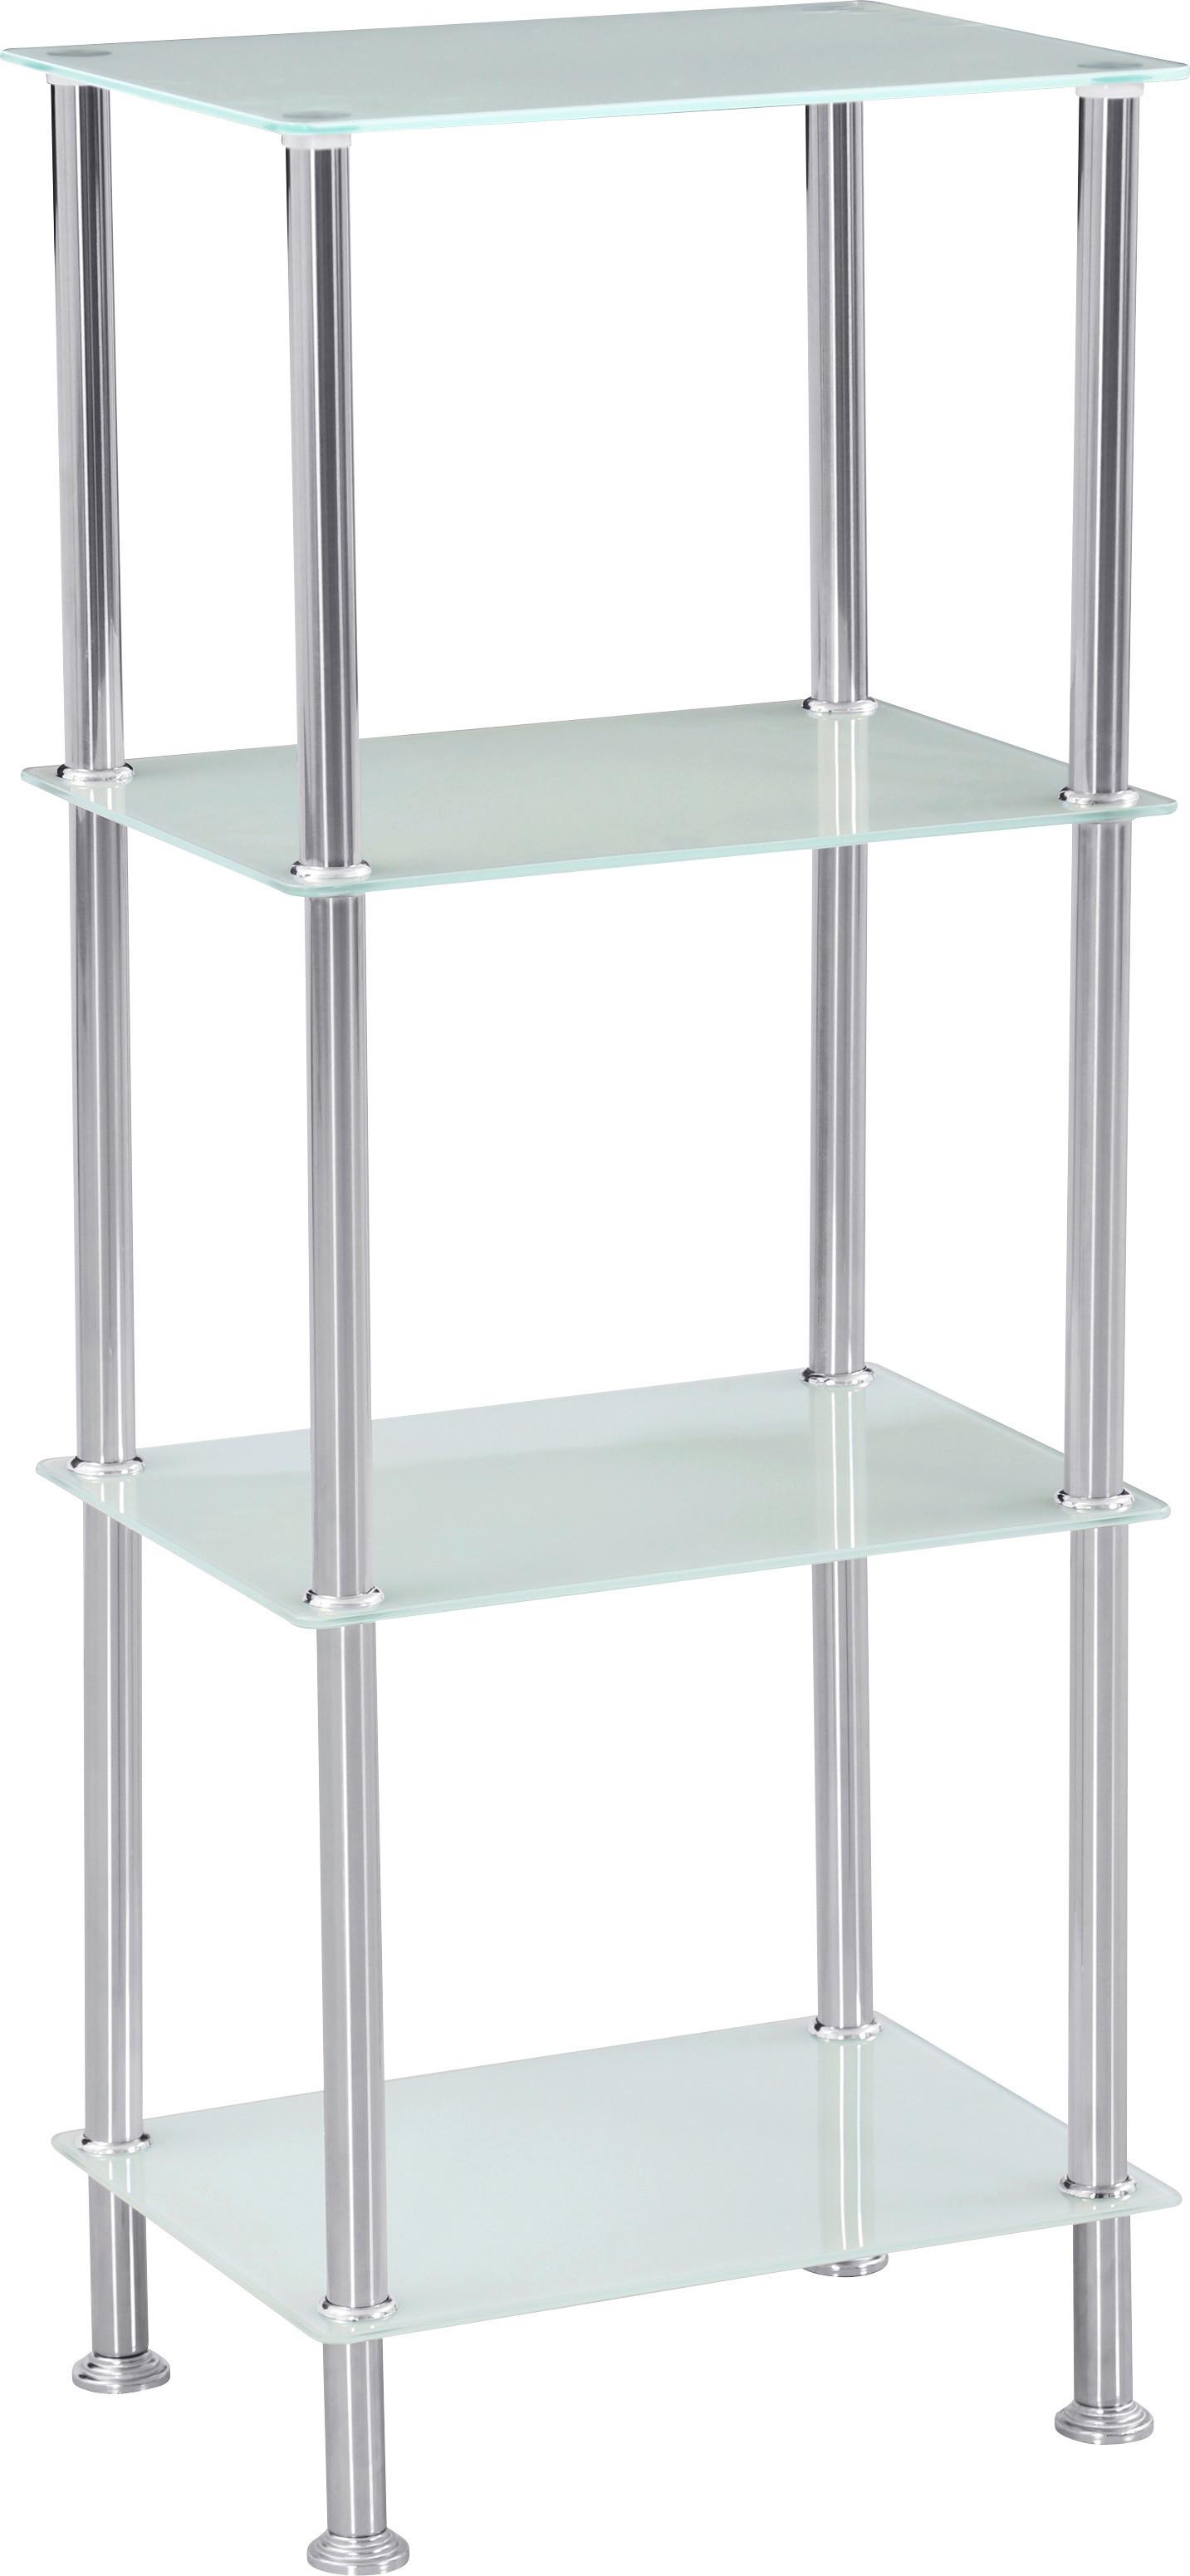 Regal mit Glasfächern Glare B 40cm, Edelstahl/Weiß - Edelstahlfarben/Weiß, MODERN, Glas/Metall (40/99cm) - Luca Bessoni